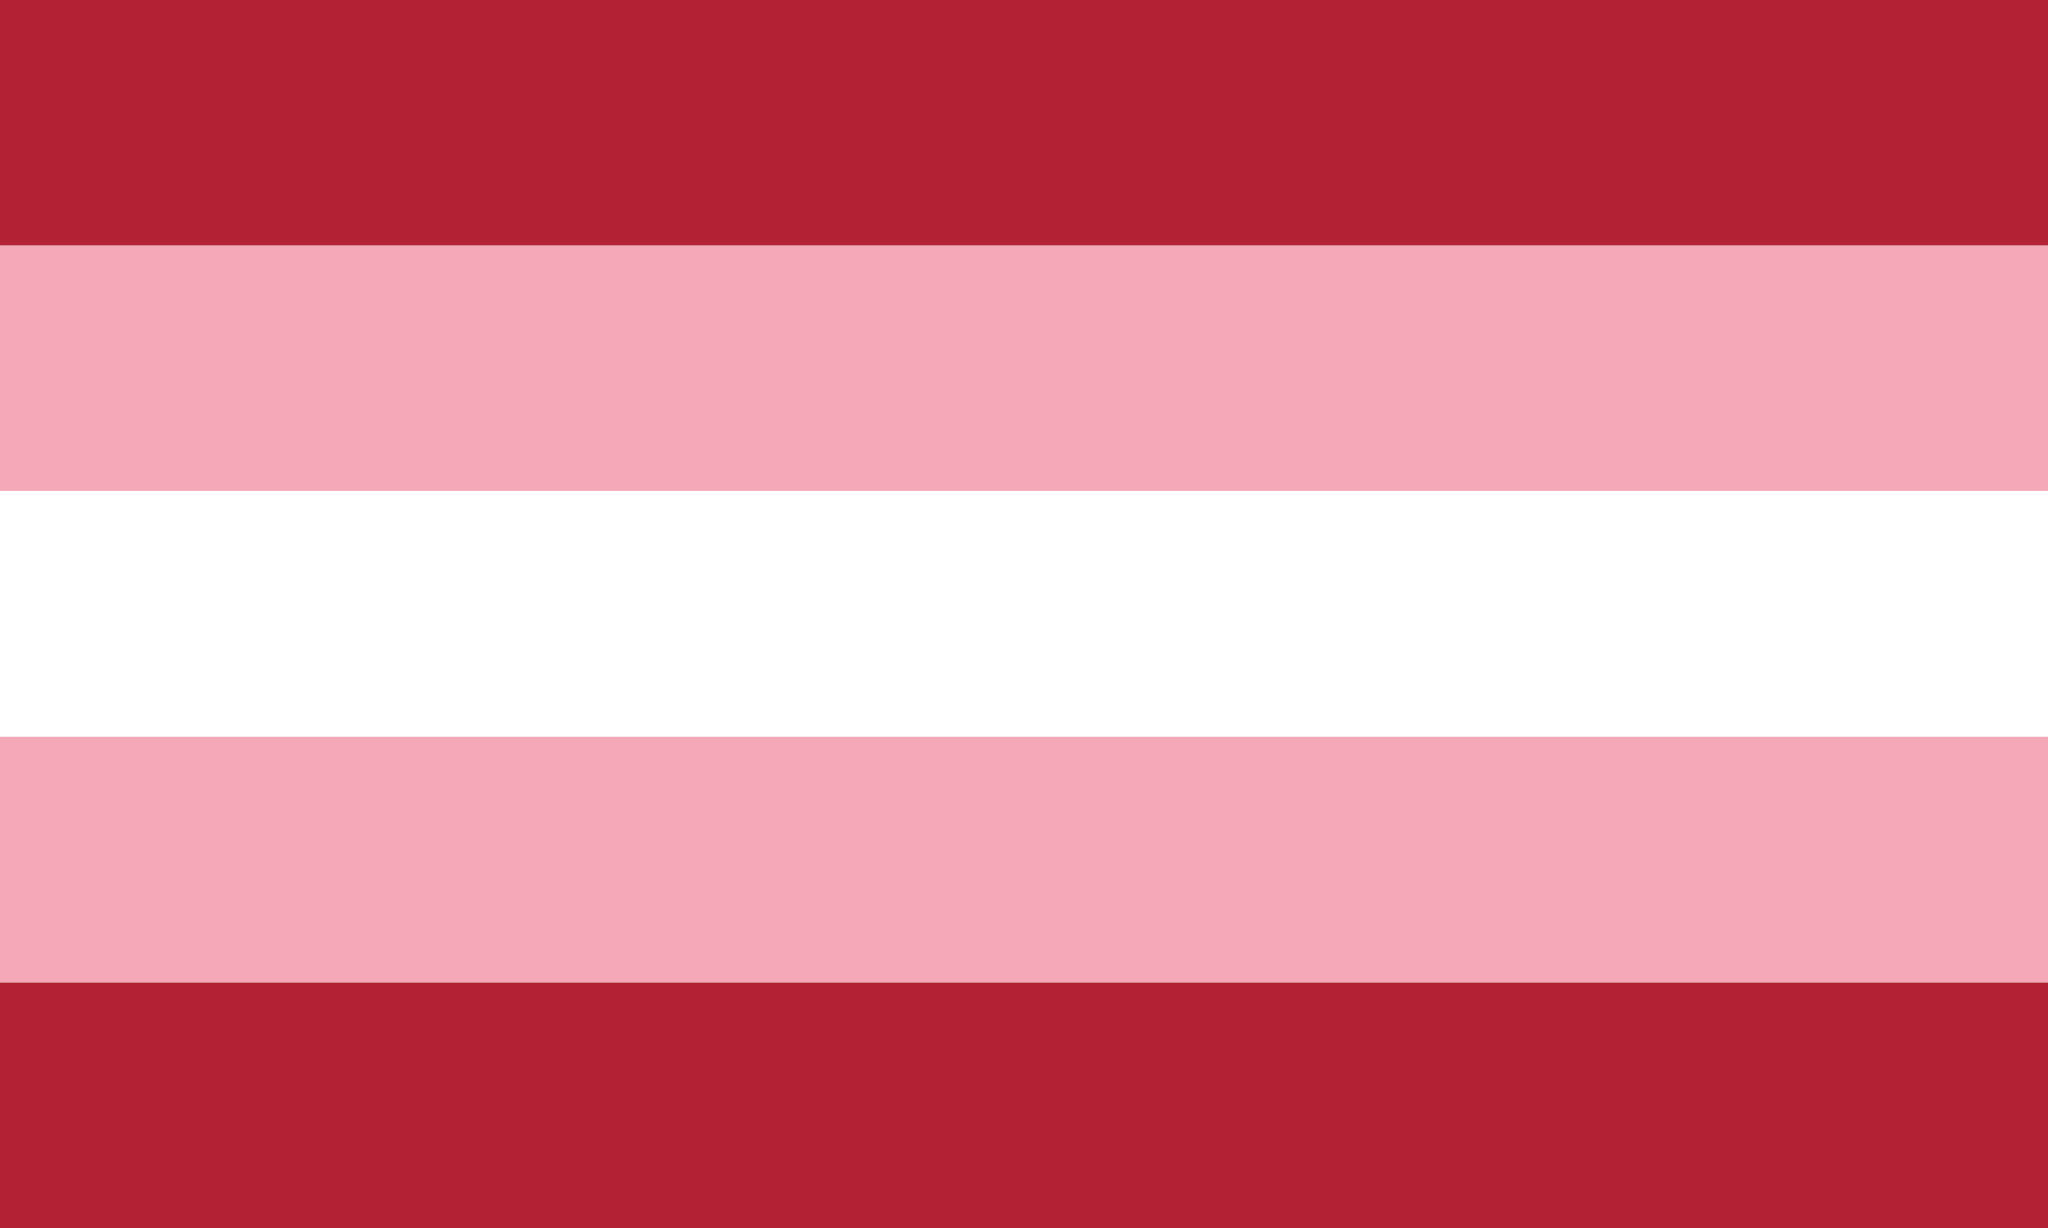 Bandeira Transfem composta por 5 faixas horizontais, sendo elas: 1 faixa central branca, 2 faixas rosas acima e abaixo da branca e 2 faixas vermelhas acima e abaixo das rosas.